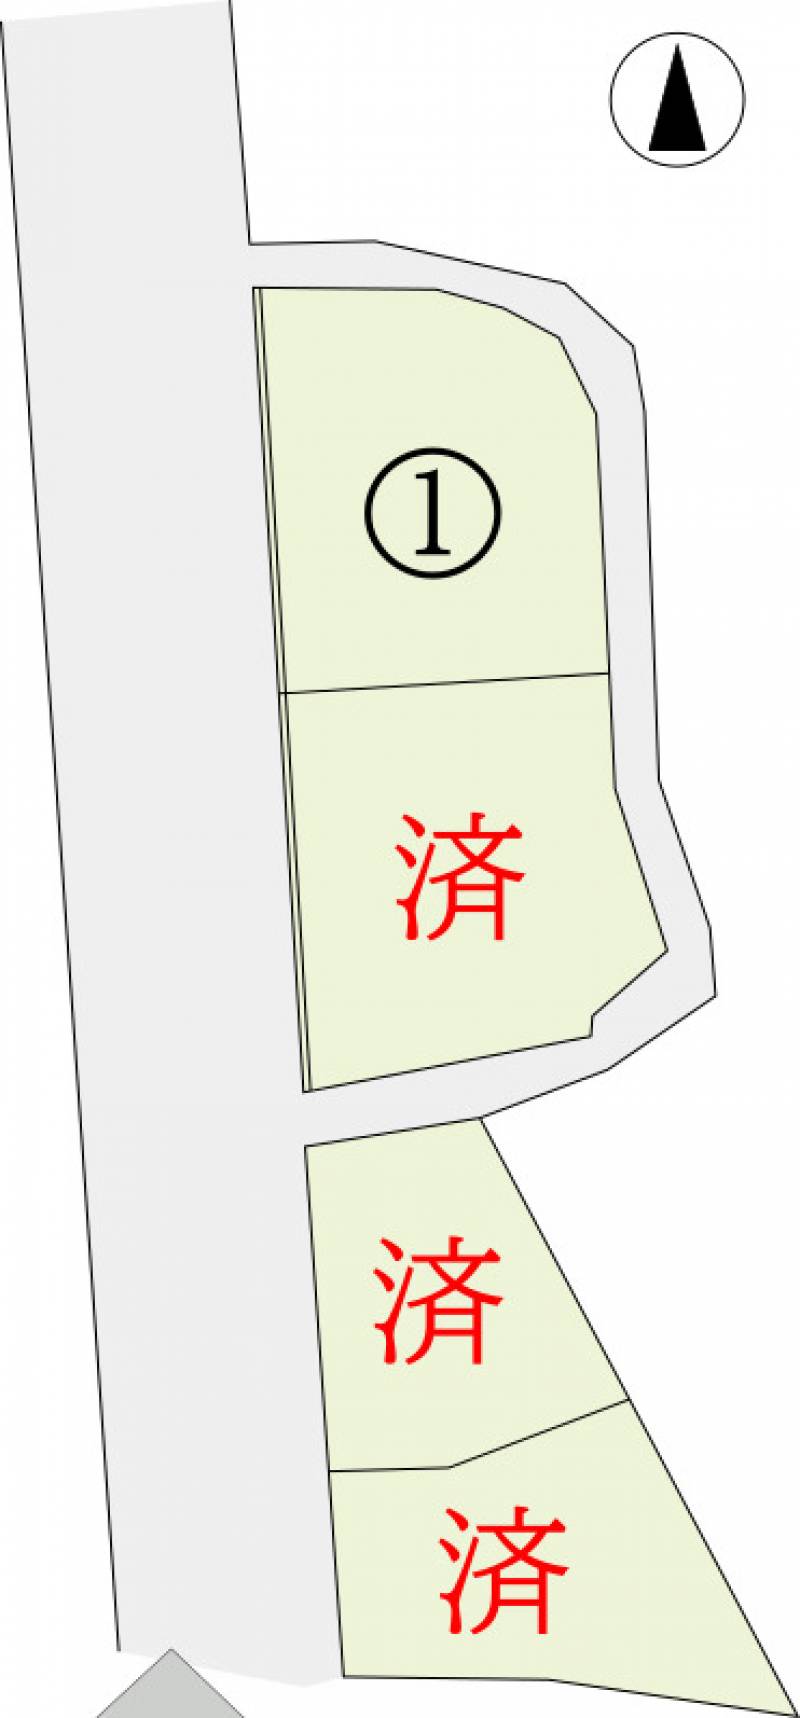 高松市国分寺町新名 イルクオーレ国分寺1号地の区画図